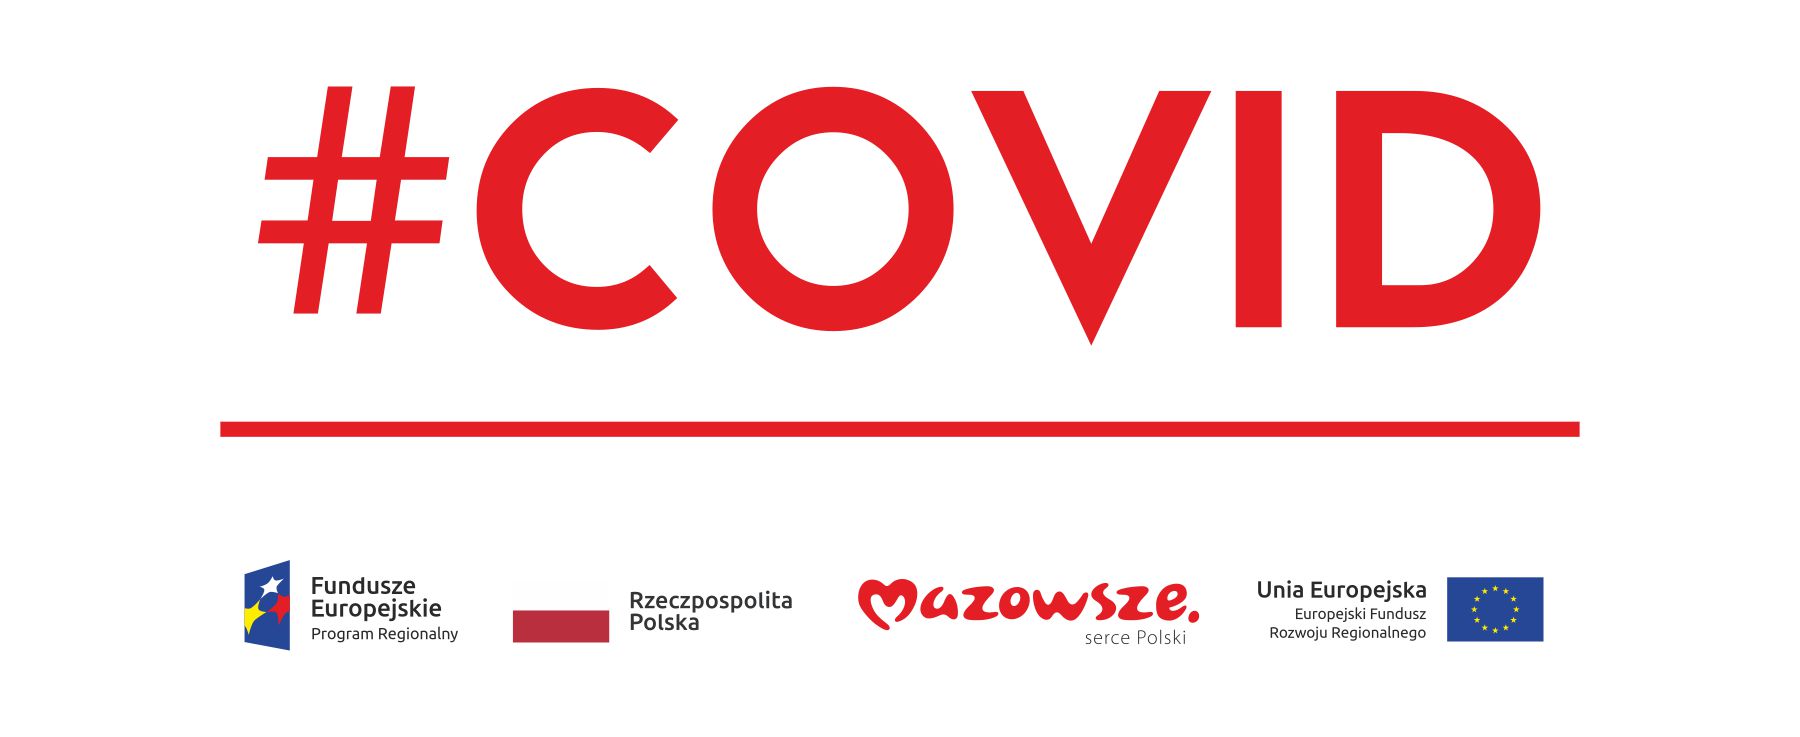 Zakup niezbędnego sprzętu oraz adaptacja pomieszczeń w związku z pojawieniem się koronawirusa SARS-CoV-2 na terenie województwa mazowieckiego